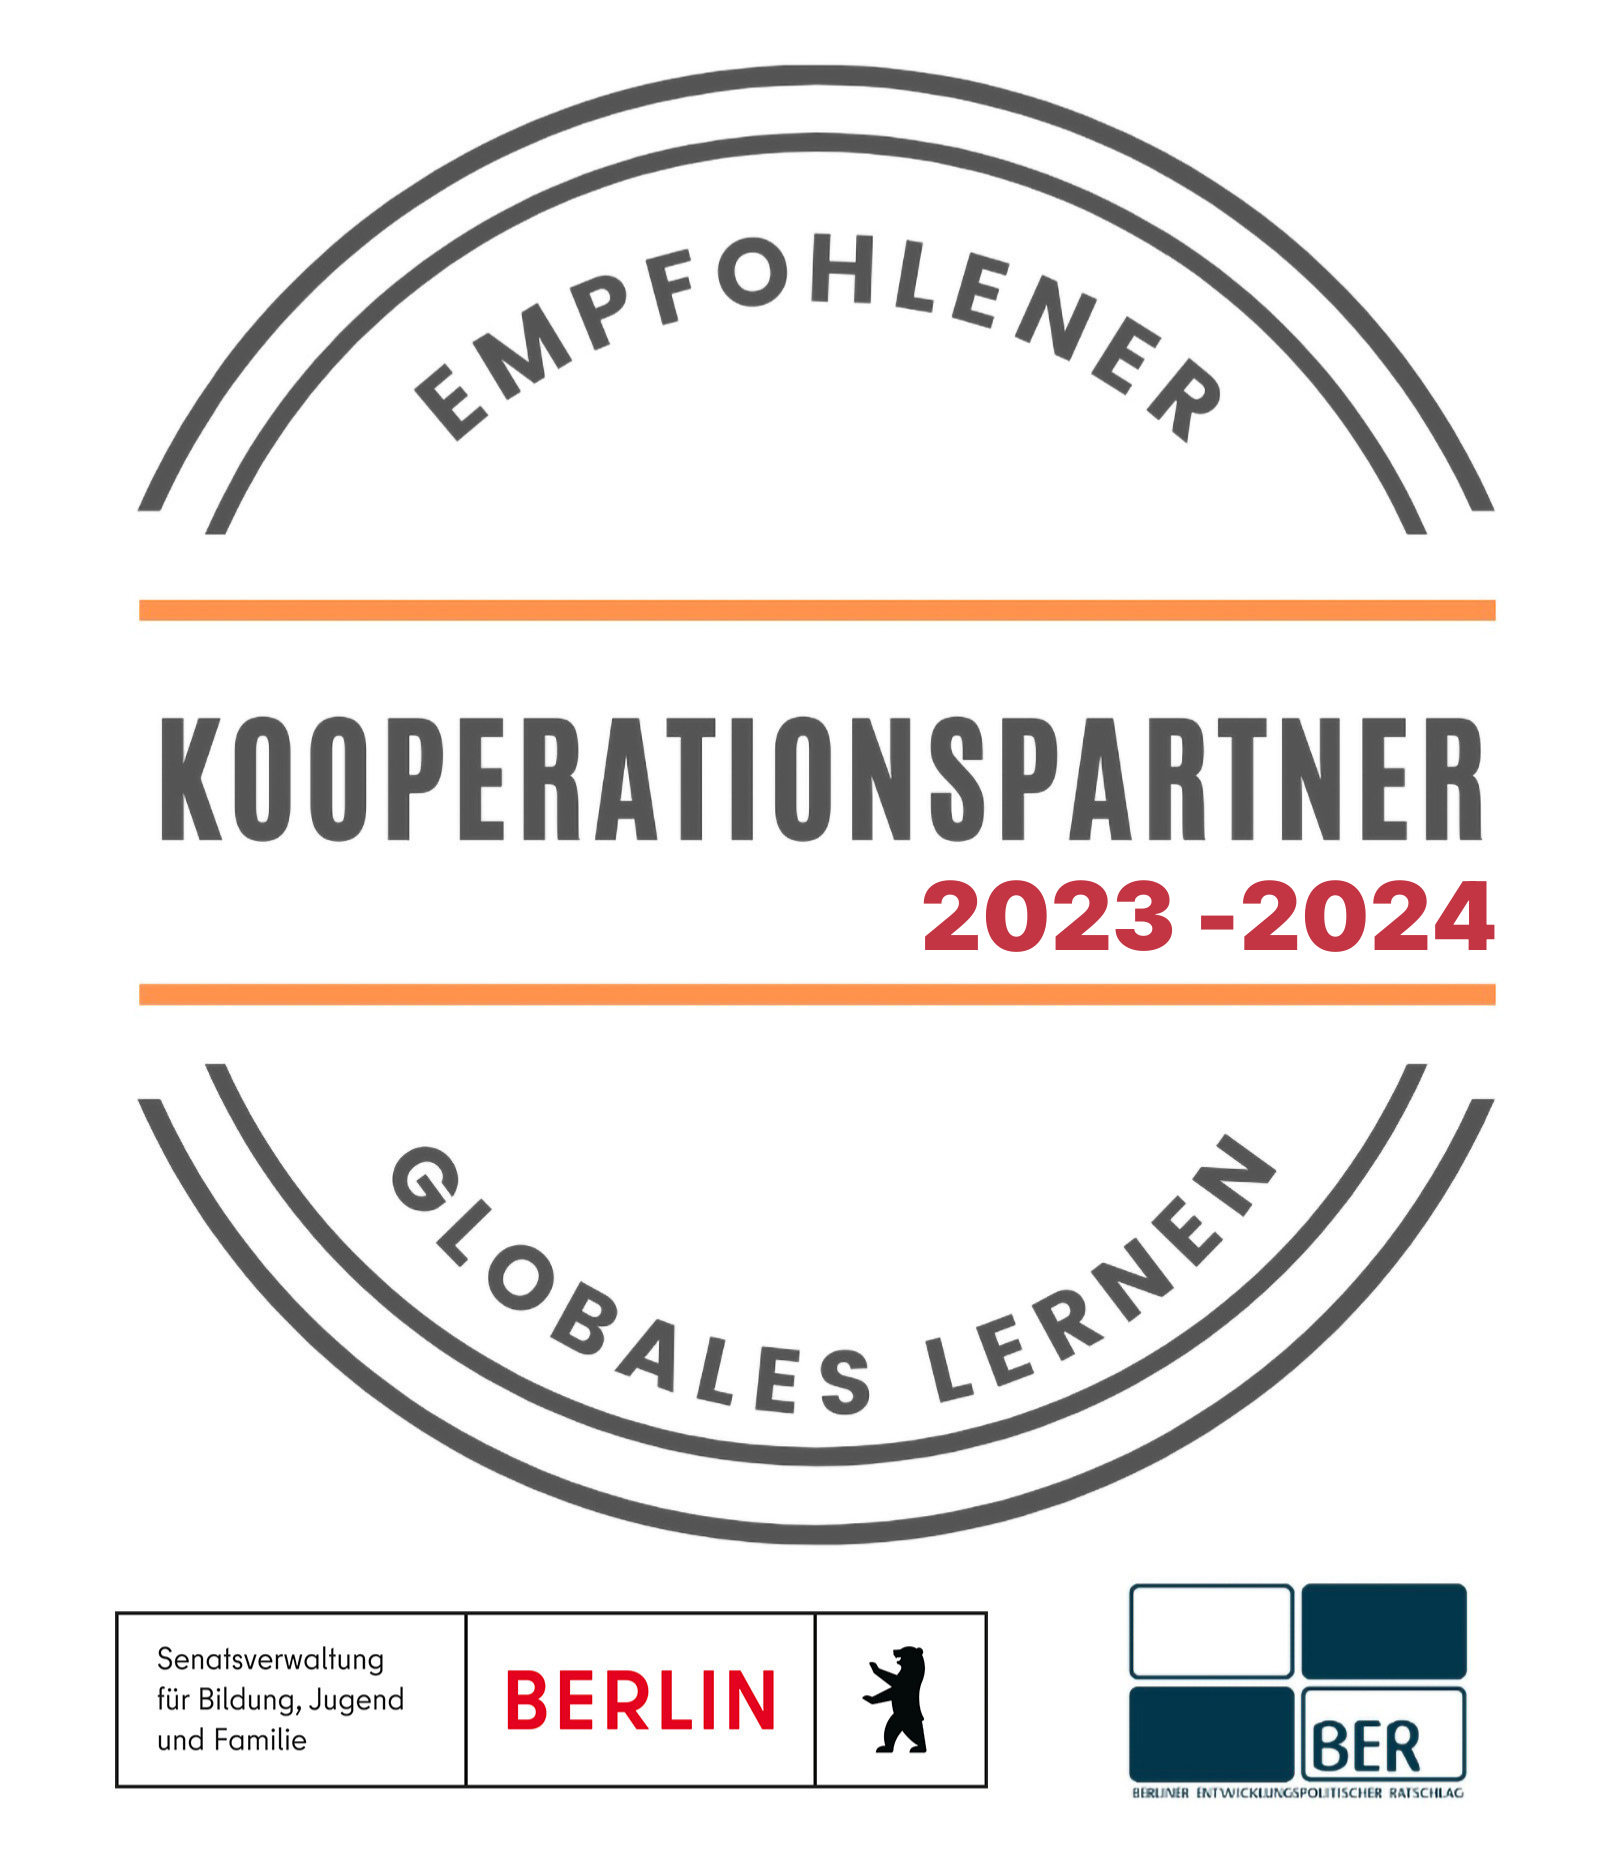 stempel.empfohlener.kooperationspartner.2023 2024